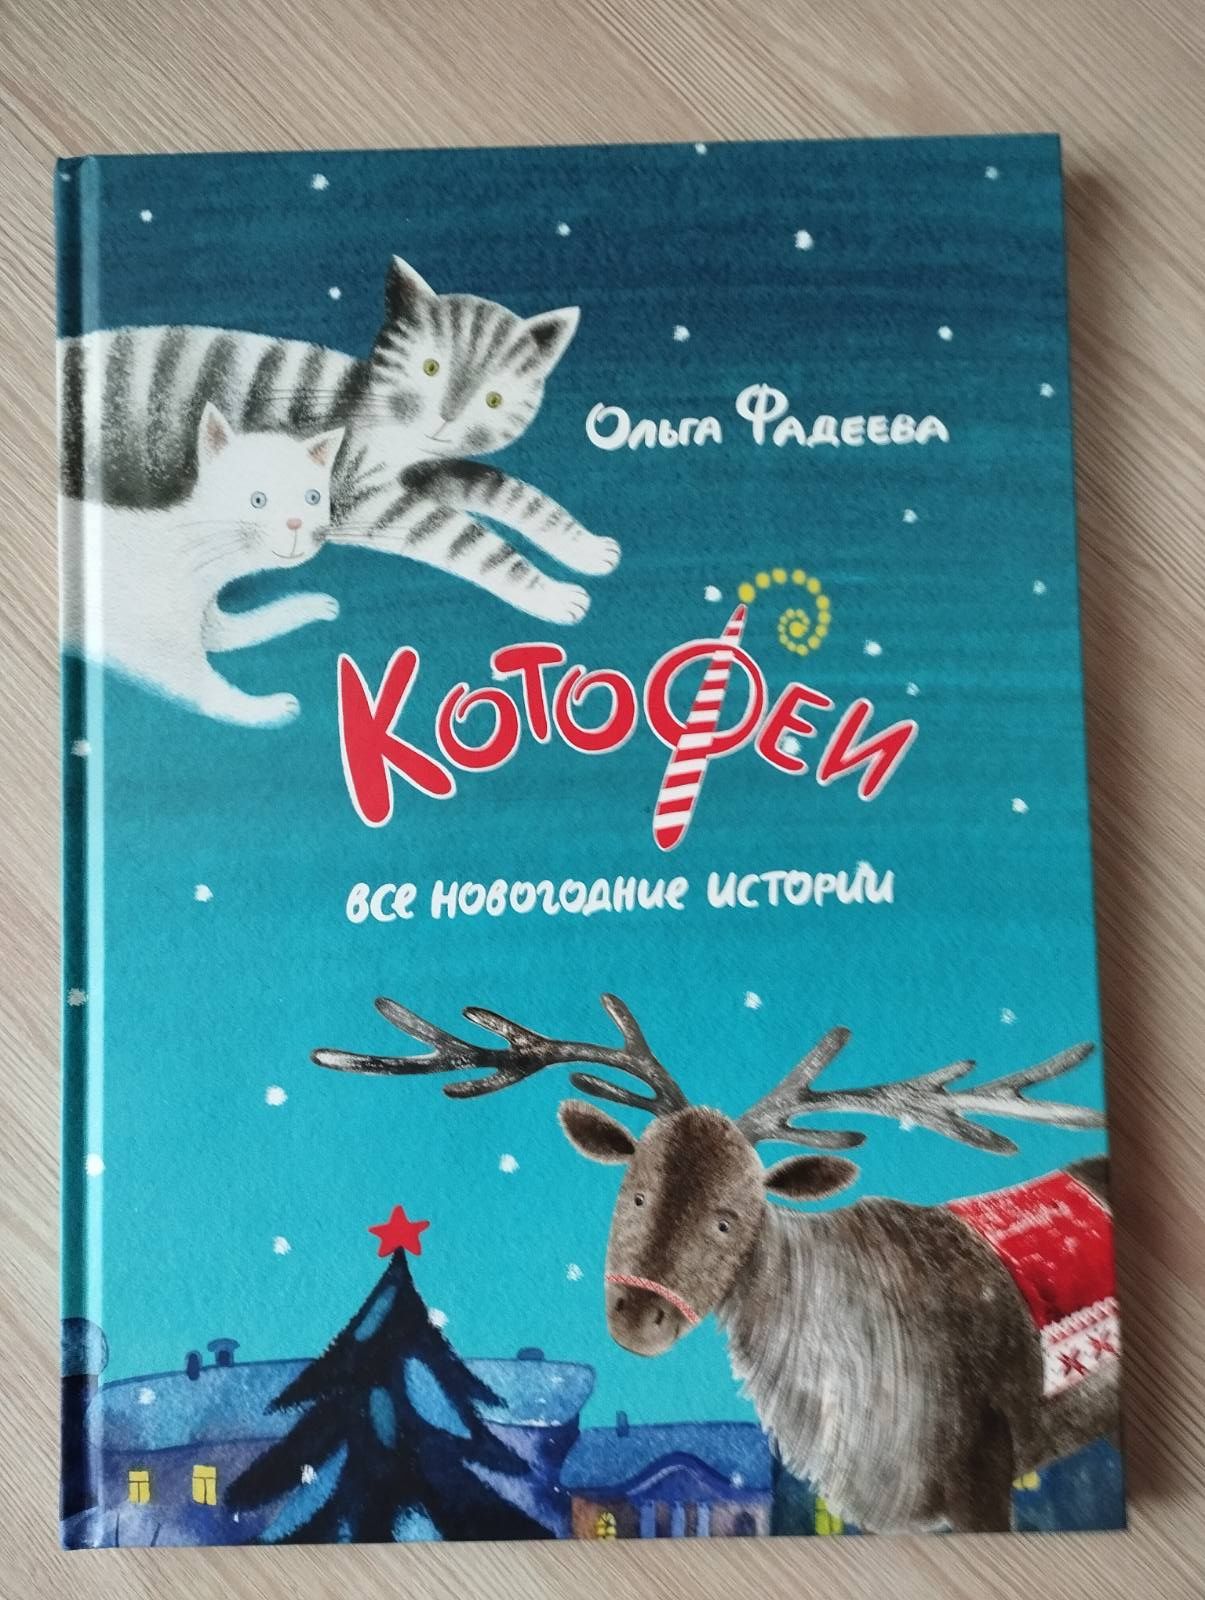 Детская книга Котофеи все новогодние истории Ольга Фадеева